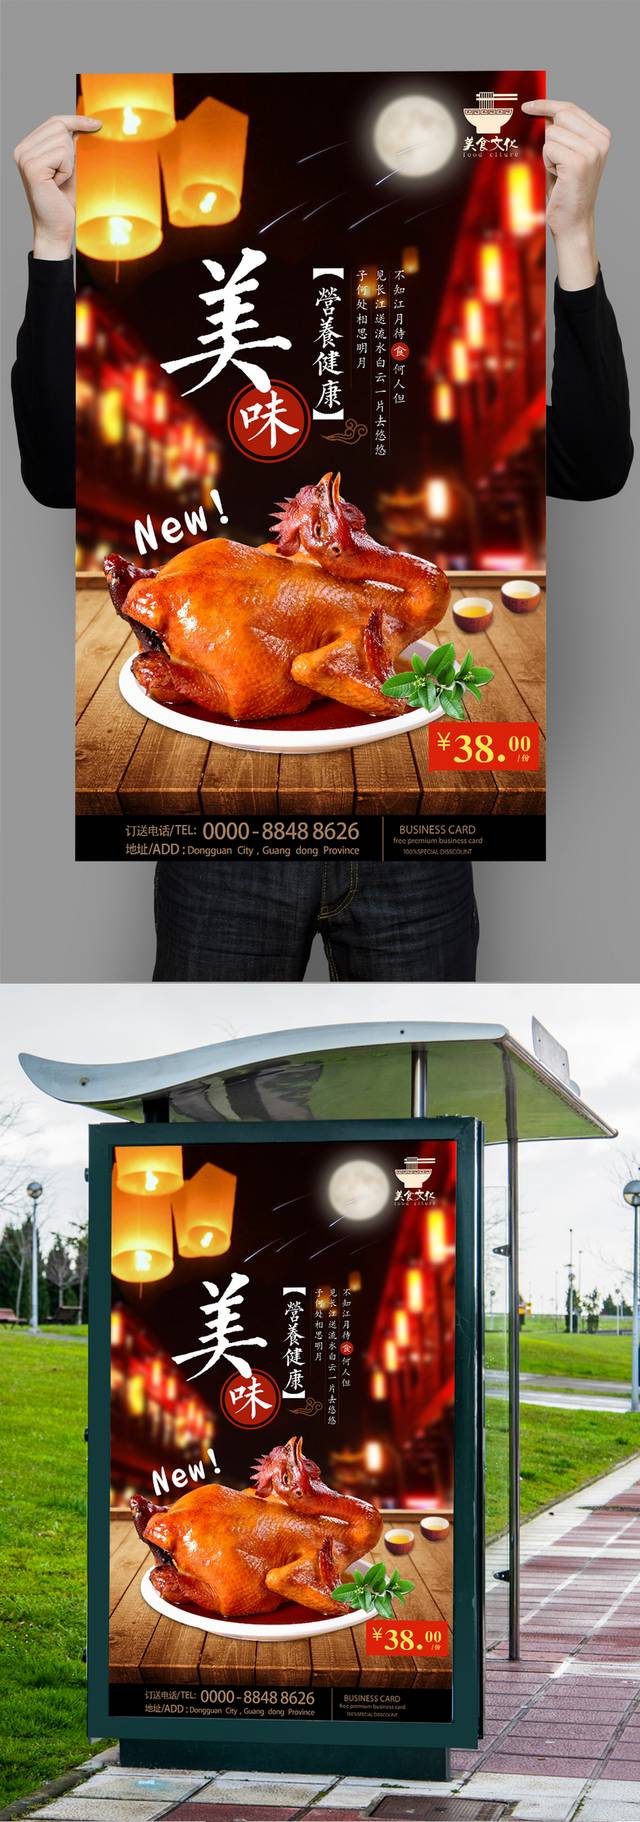 美味复古德州扒鸡宣传海报设计